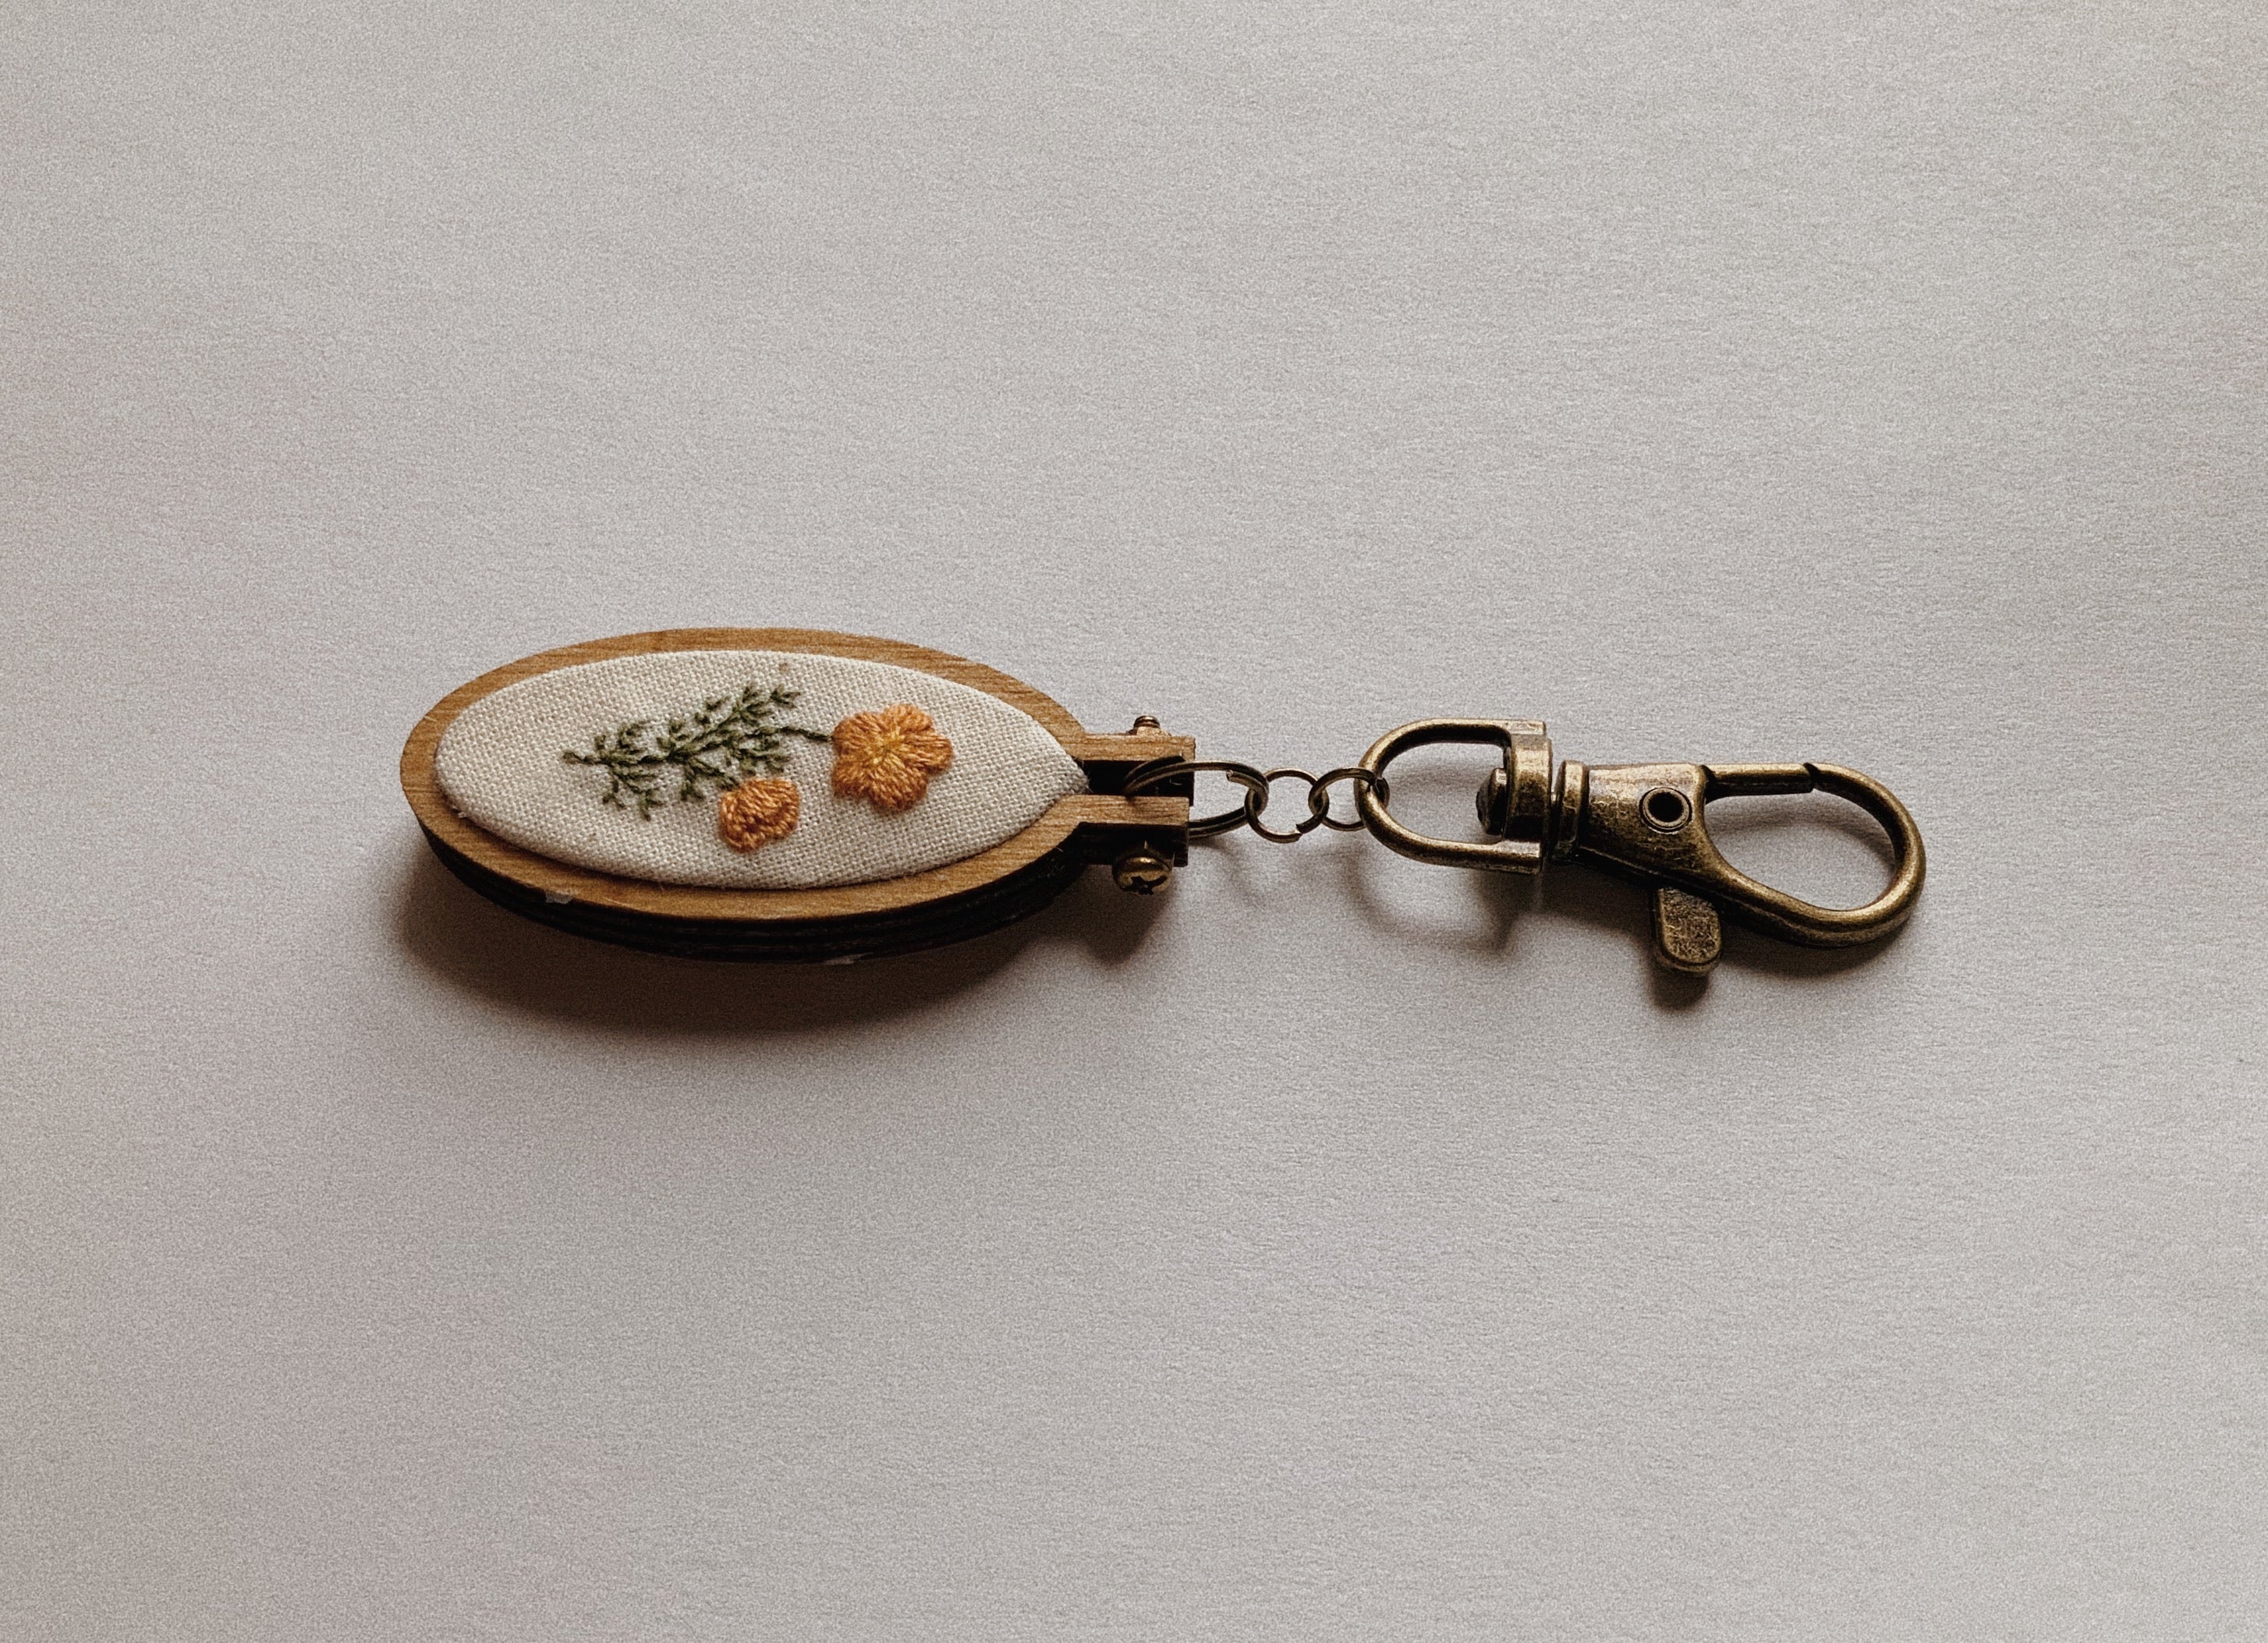 Small Oval Poppy Flower Keychain